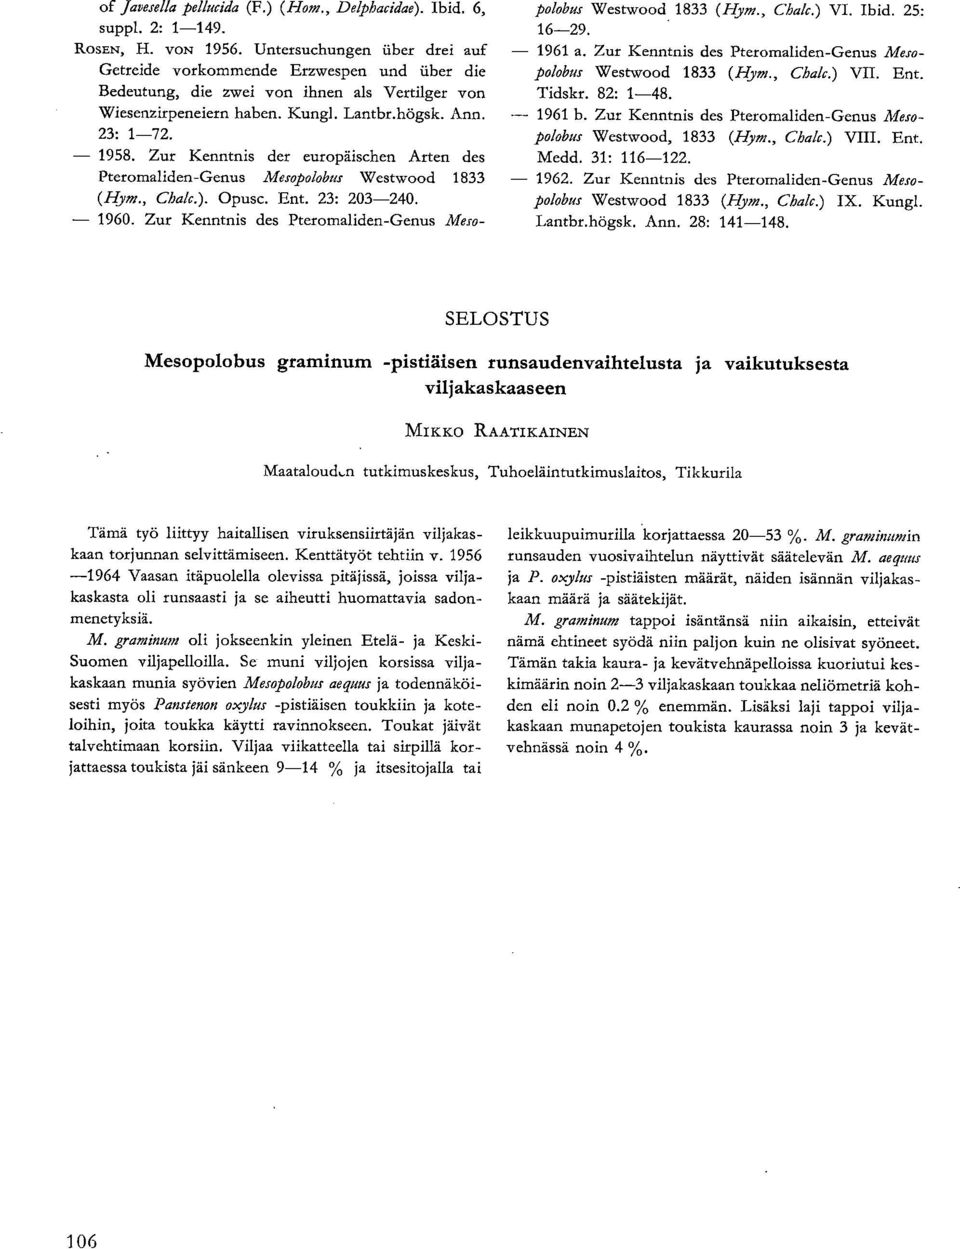 Zur Kenntnis der europäischen Arten des Pteromaliden-Genus Mesopolobus Westwood 1833 (Hym., Chalc.). Opusc. Ent. 23: 203-240. 1960.